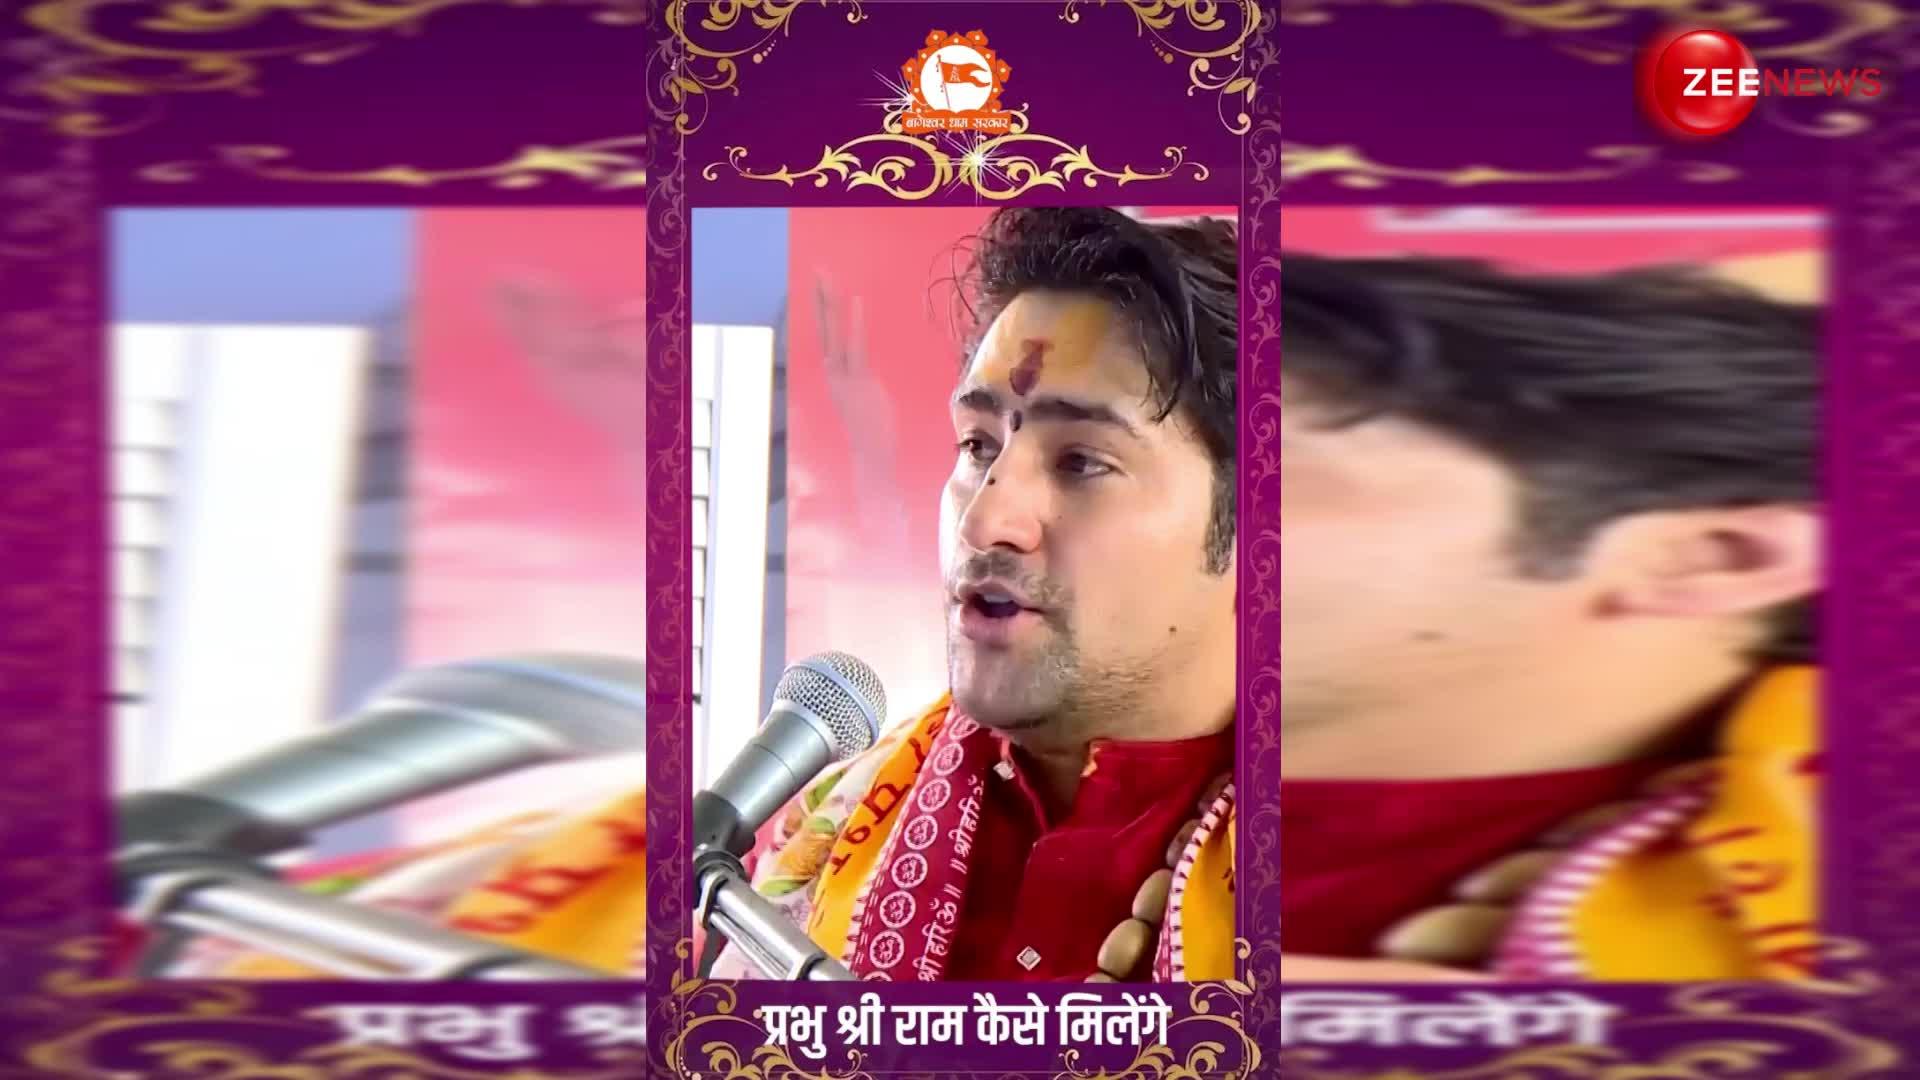 Bageshwar Baba ने बताया कैसे मिलेंगे प्रभु श्री राम, देखें ये वीडियो